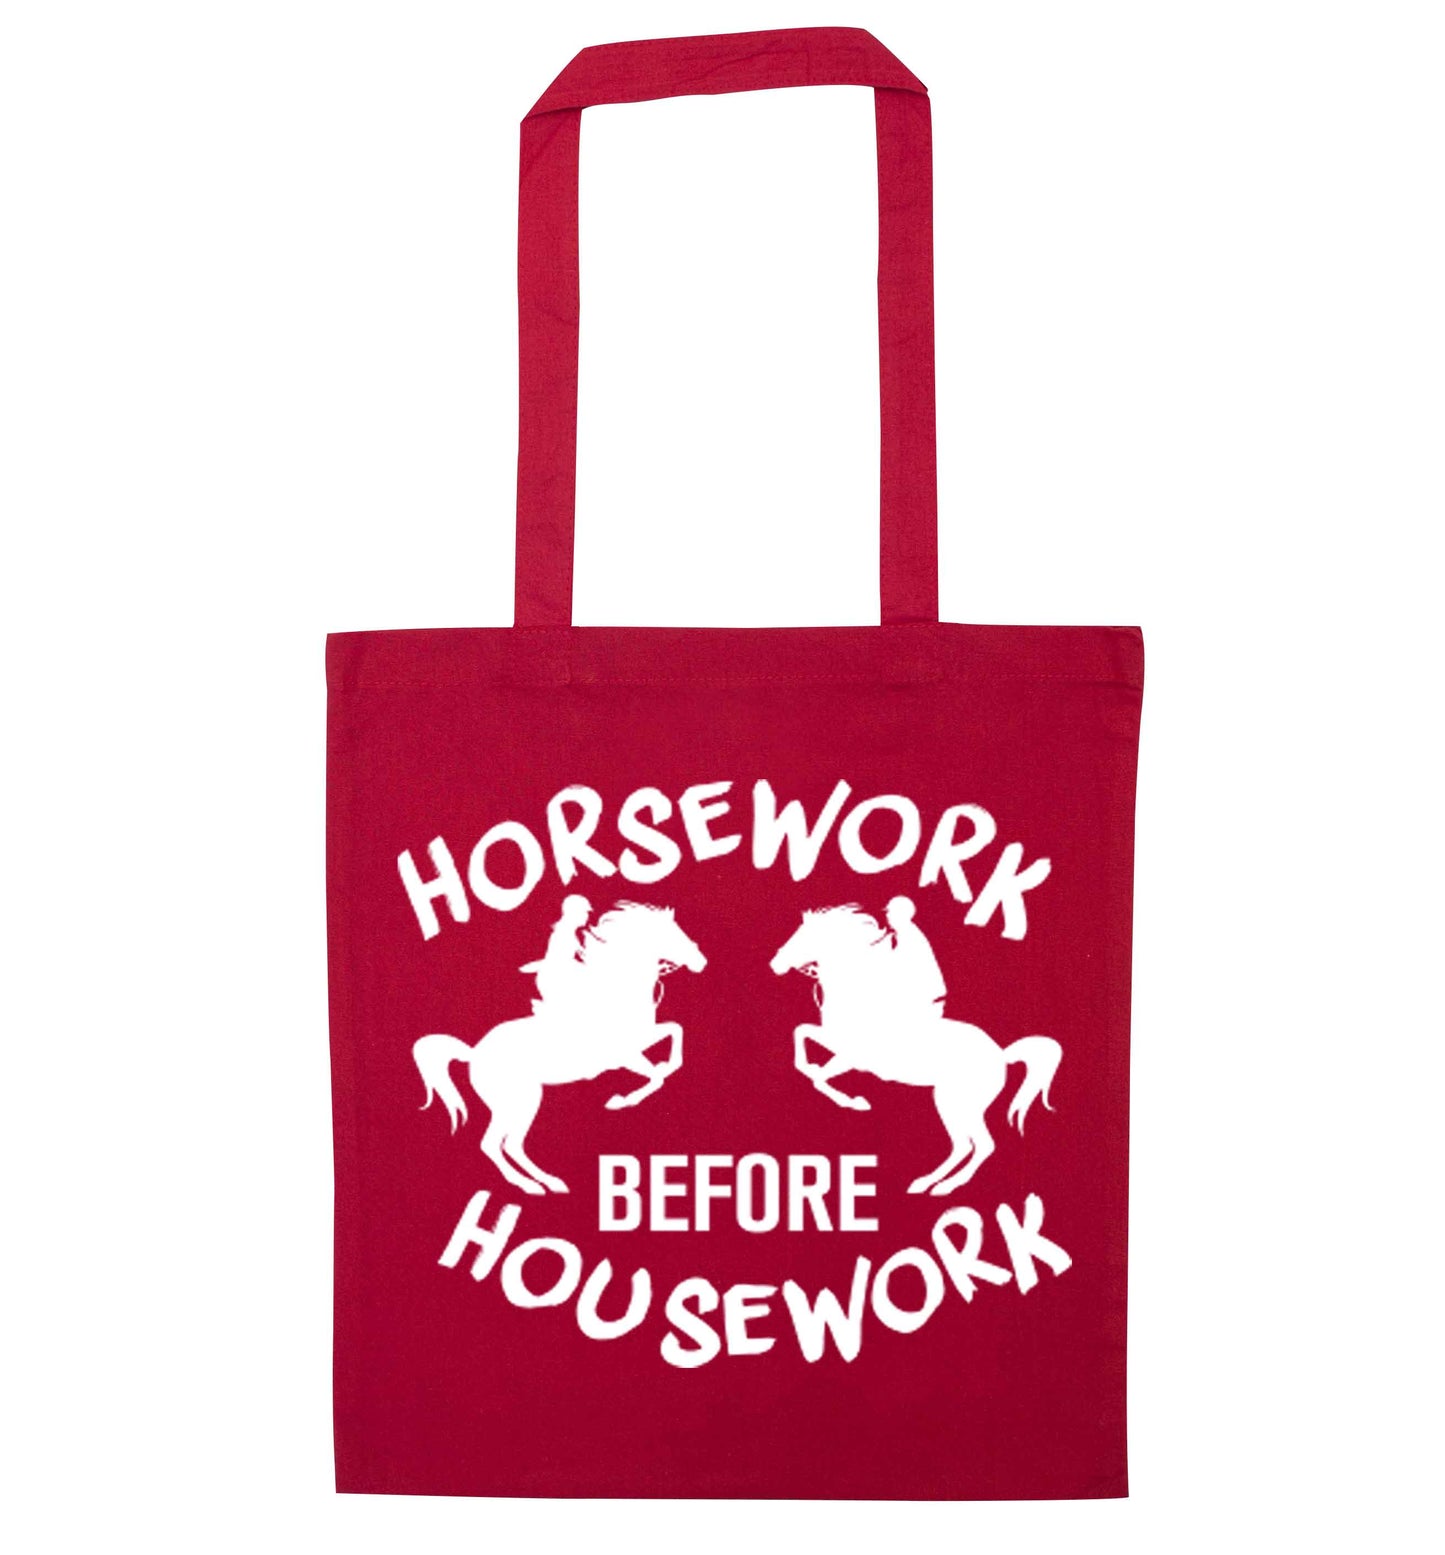 Horsework before housework red tote bag